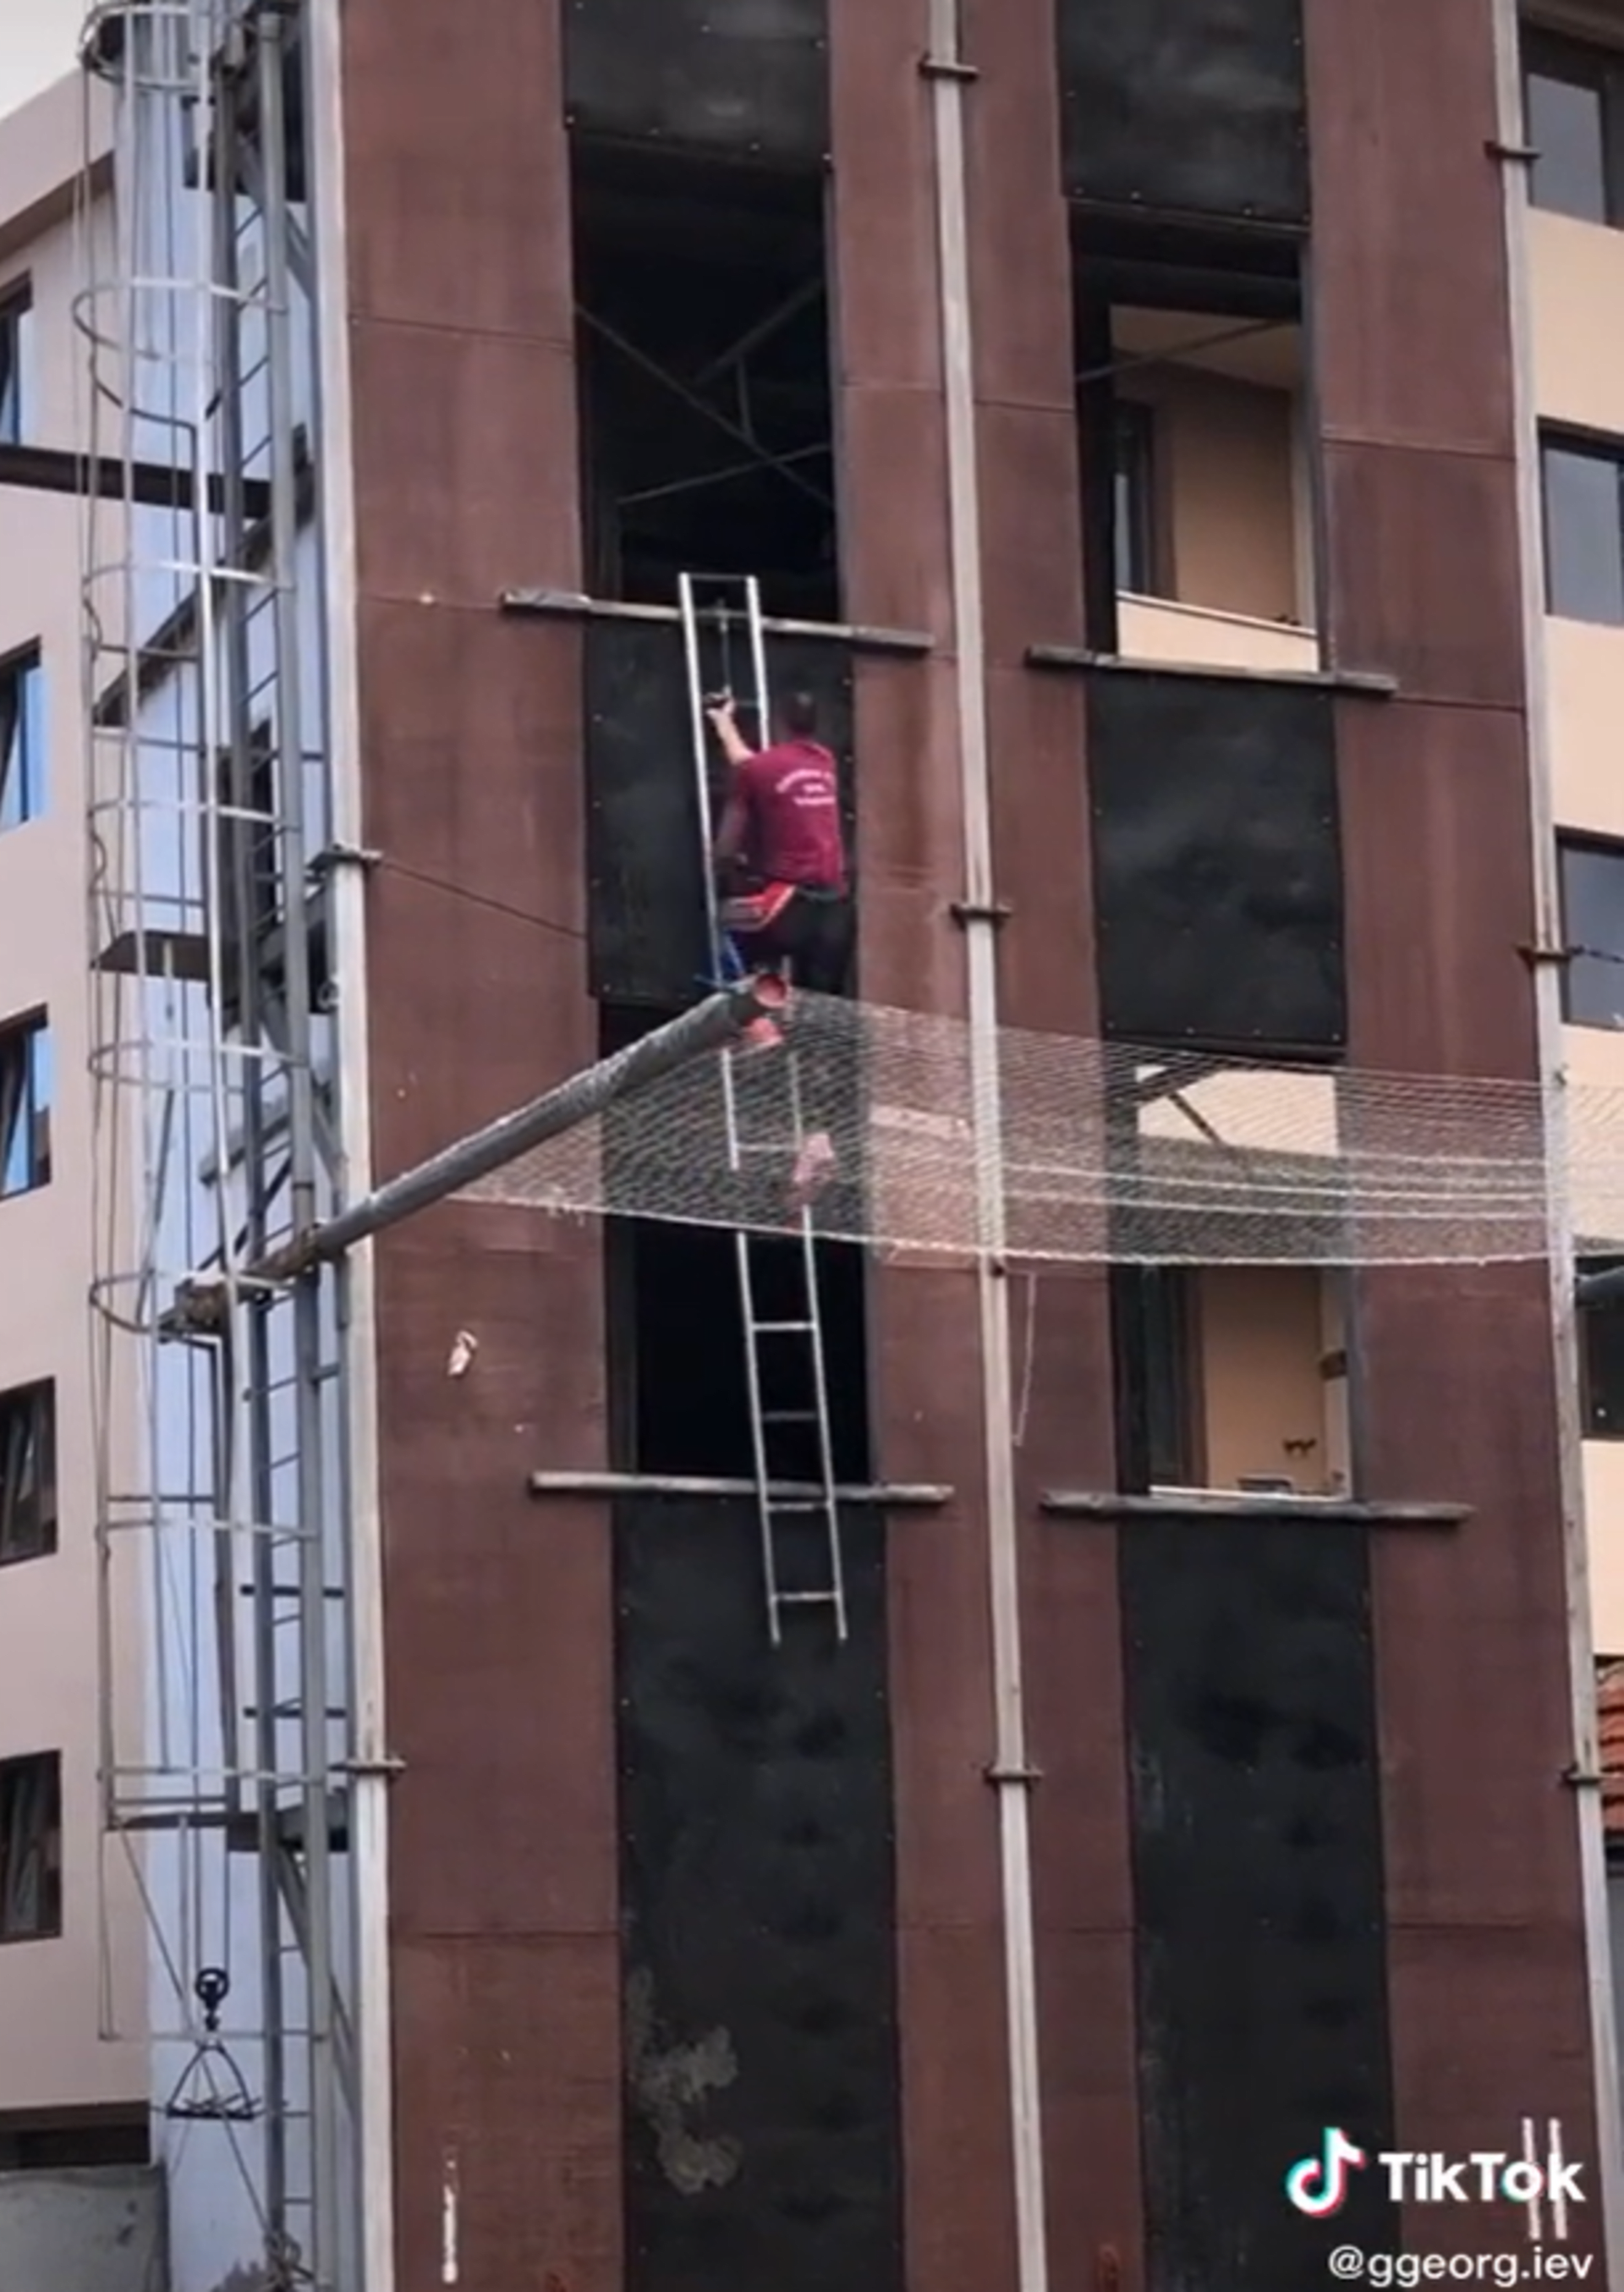 Hasič šplhá po budově jako Spider-Man 1